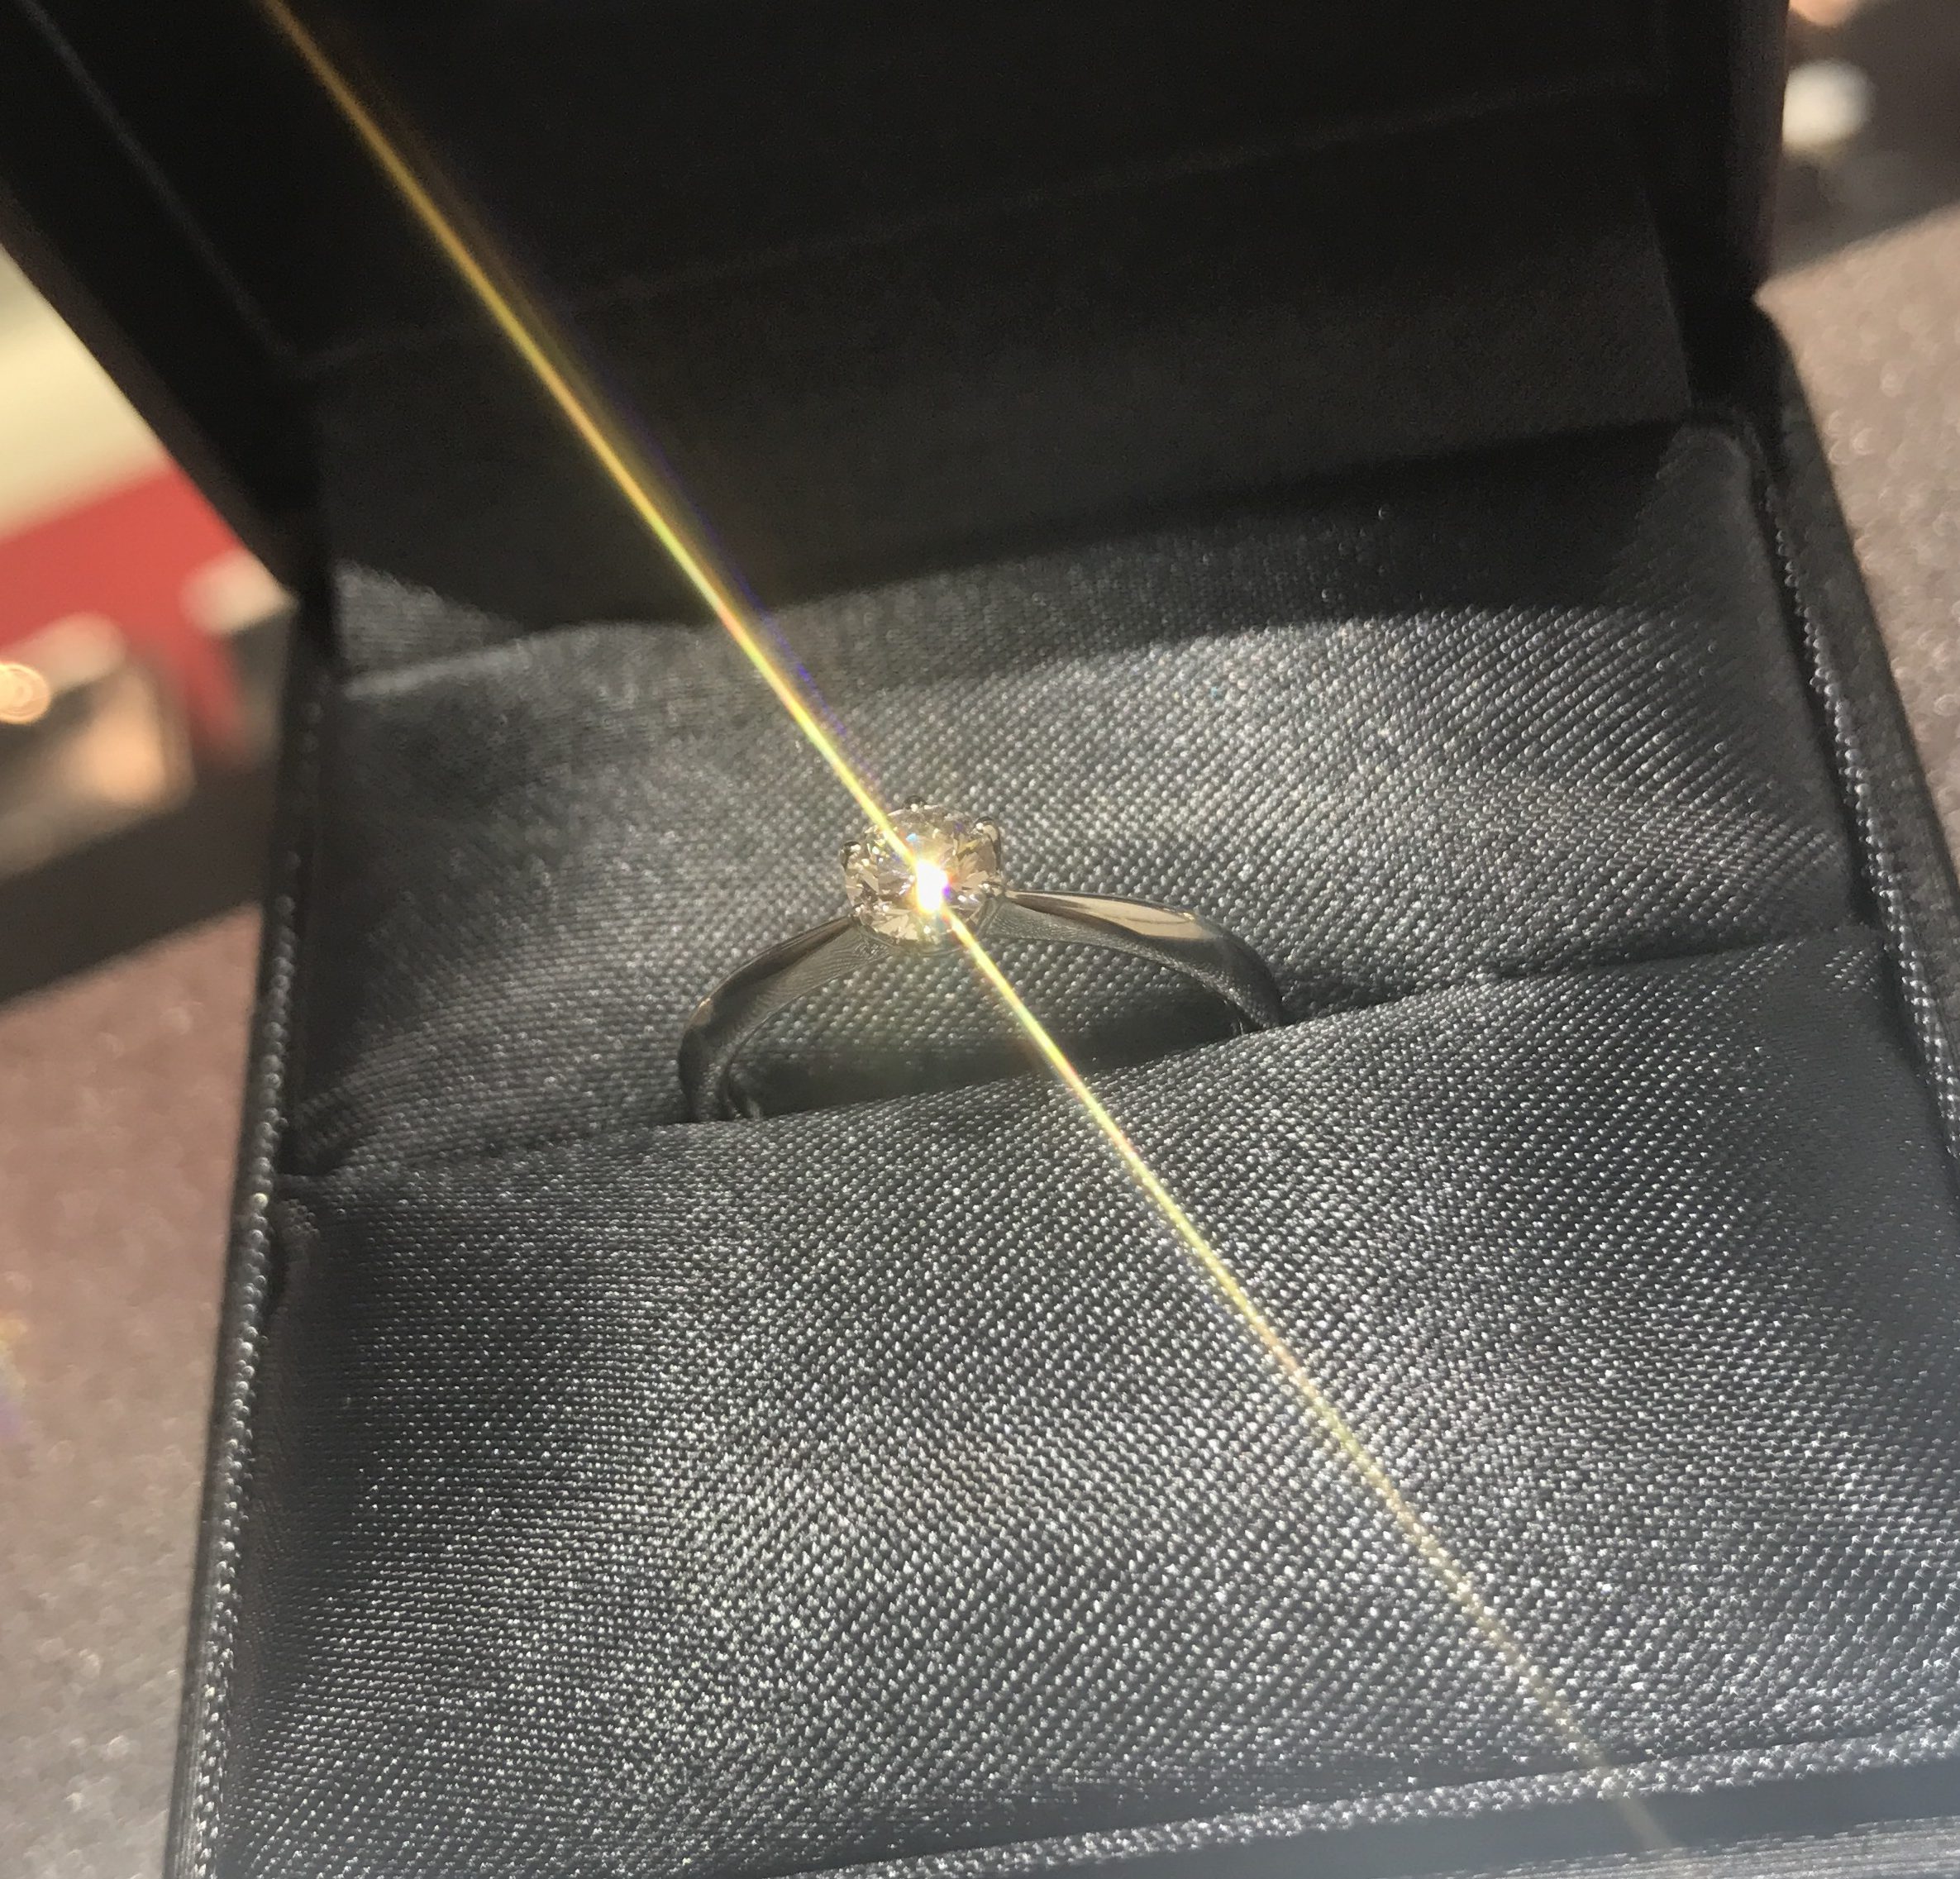 新潟で手に入る婚約指輪 [世界三大ダイヤモンドブランドのラザールダイヤモンド]　世界で最も美しいダイヤモンド®️ 虹の七色が美しい…